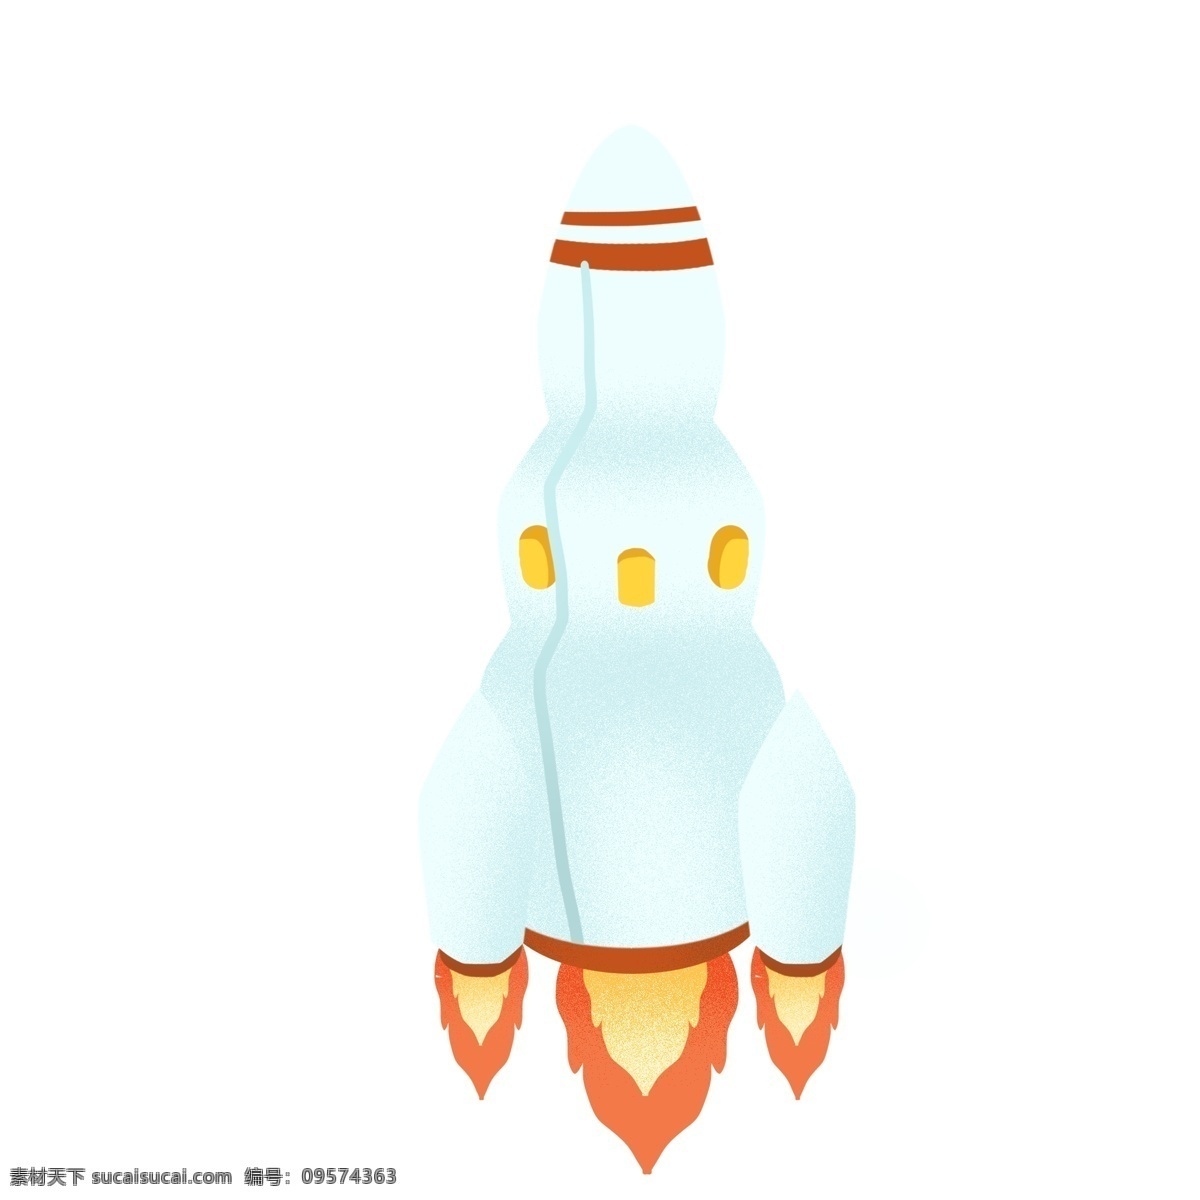 白色 火箭 图标 免 抠 太空 宇宙 卡通火箭 火苗 火箭舱 原创手绘 卡通 可爱 简单 简洁 简约 飞天 航天科技 现代化